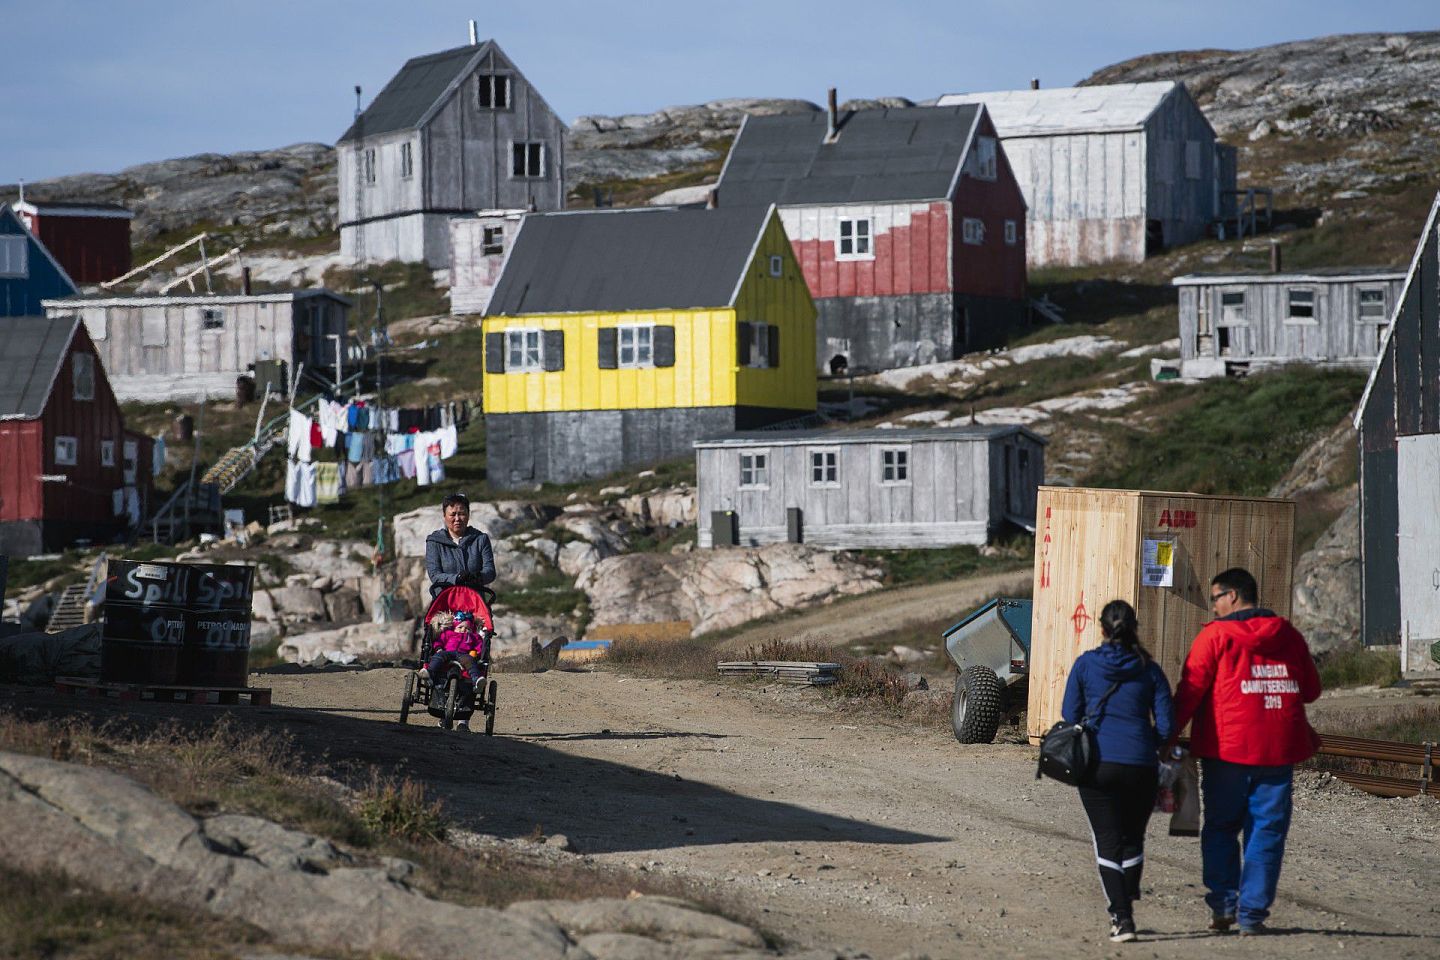 格陵兰岛蕴含石油、天然气与稀土等天然资源。美国总统特朗普（Donald Trump）曾提出购买格陵兰岛的建议。（AFP）